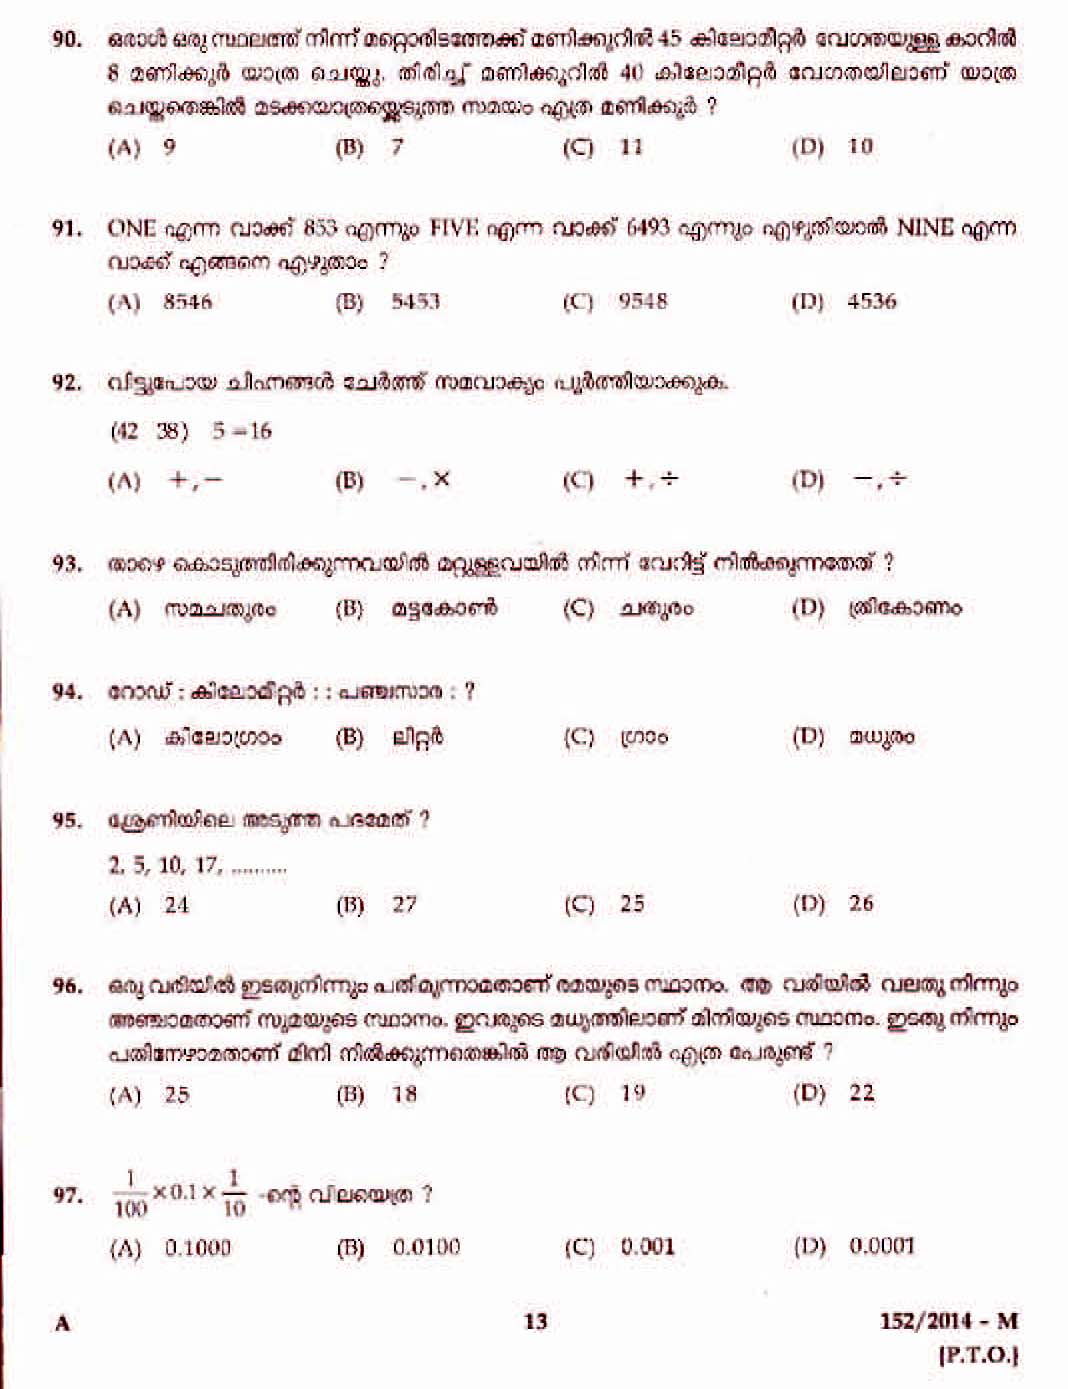 Kerala PSC Junior Assistant in KSRTC Exam 2014 Question Paper Code 1522014 M 11